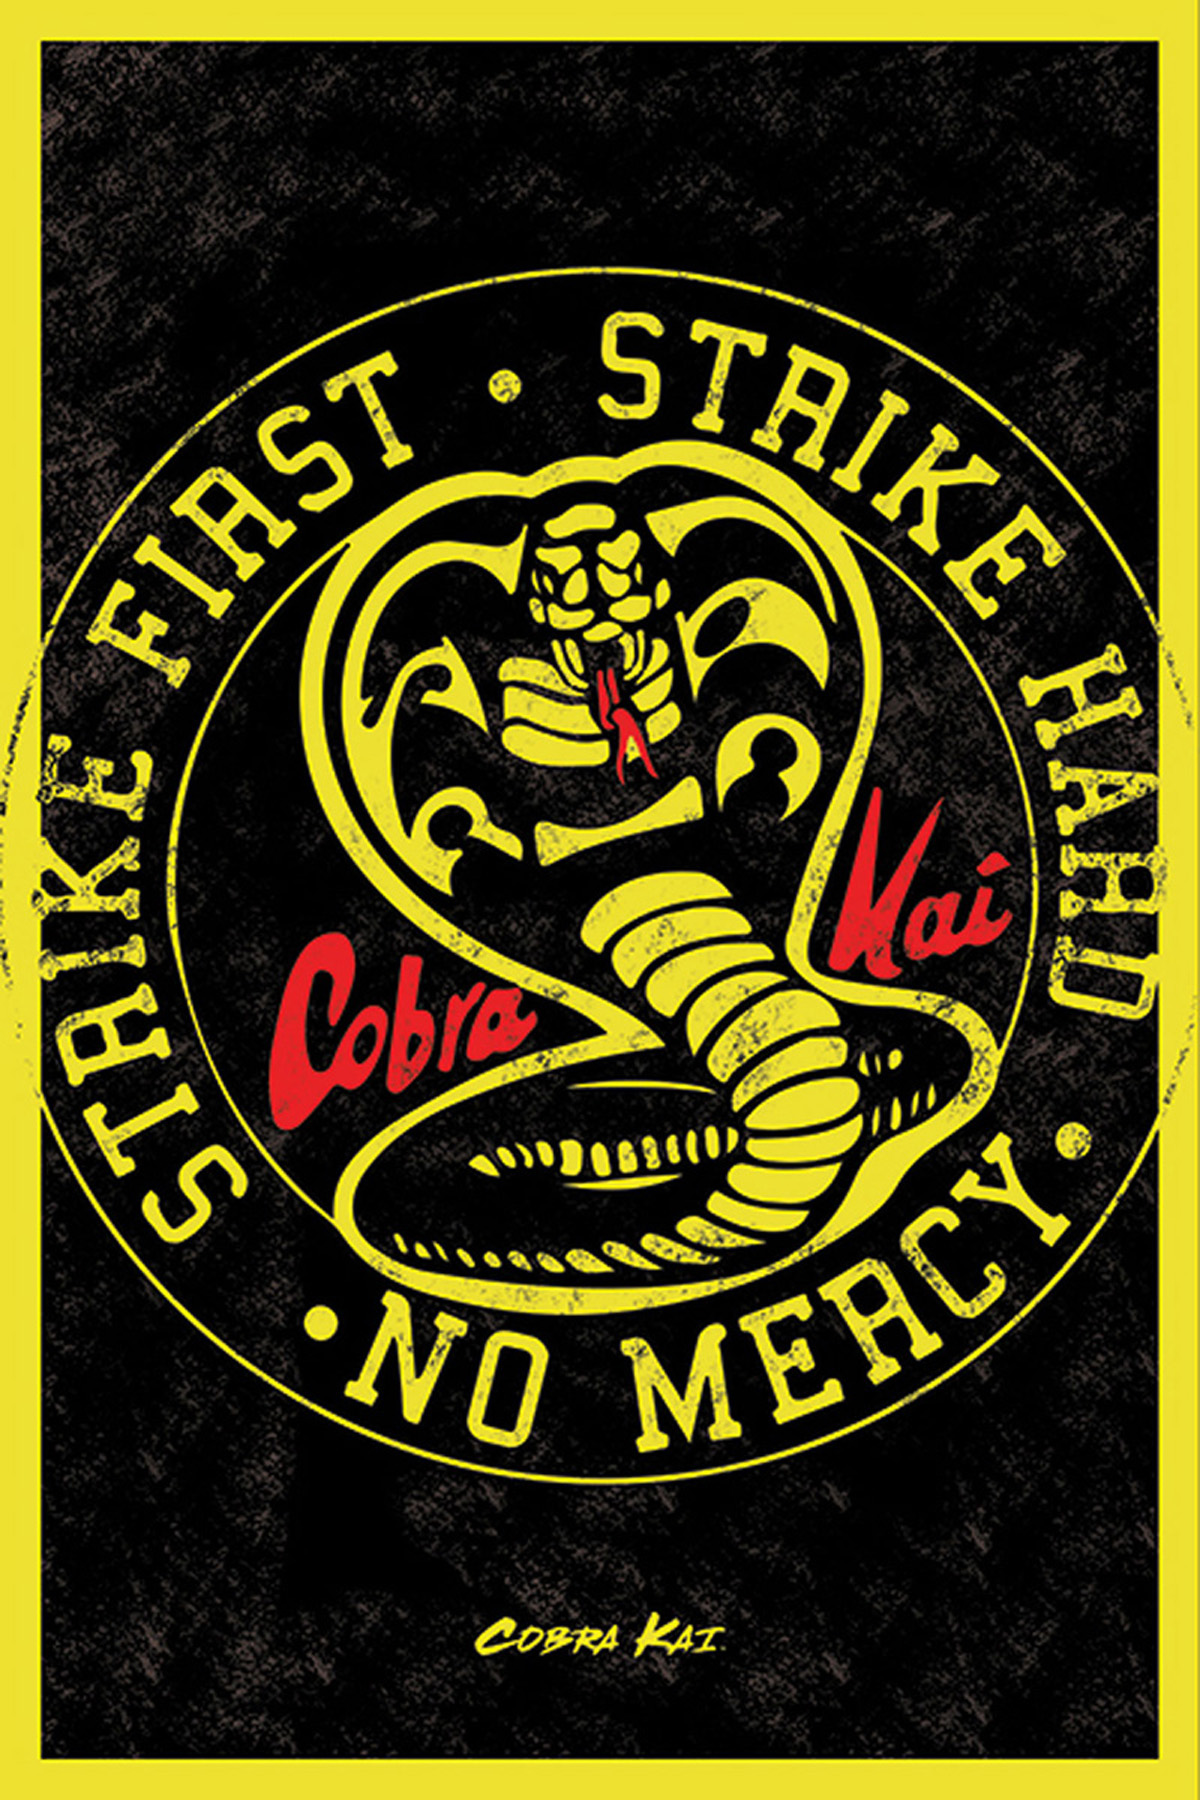 Cobra Kai - Emblem